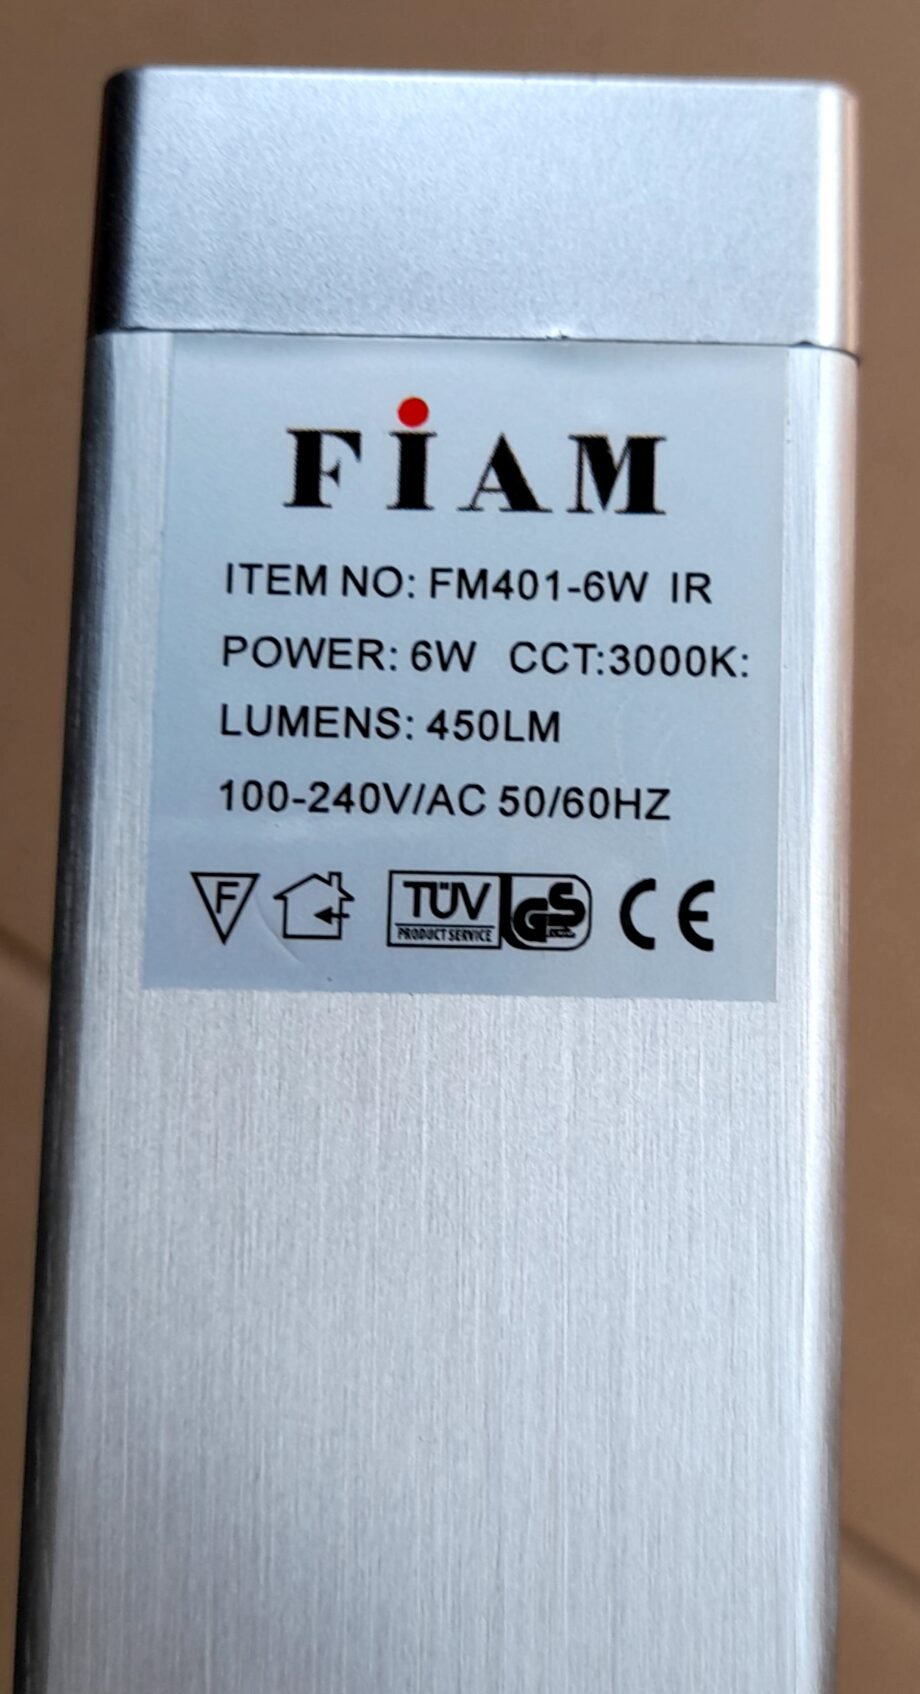 FM401-6W Specs